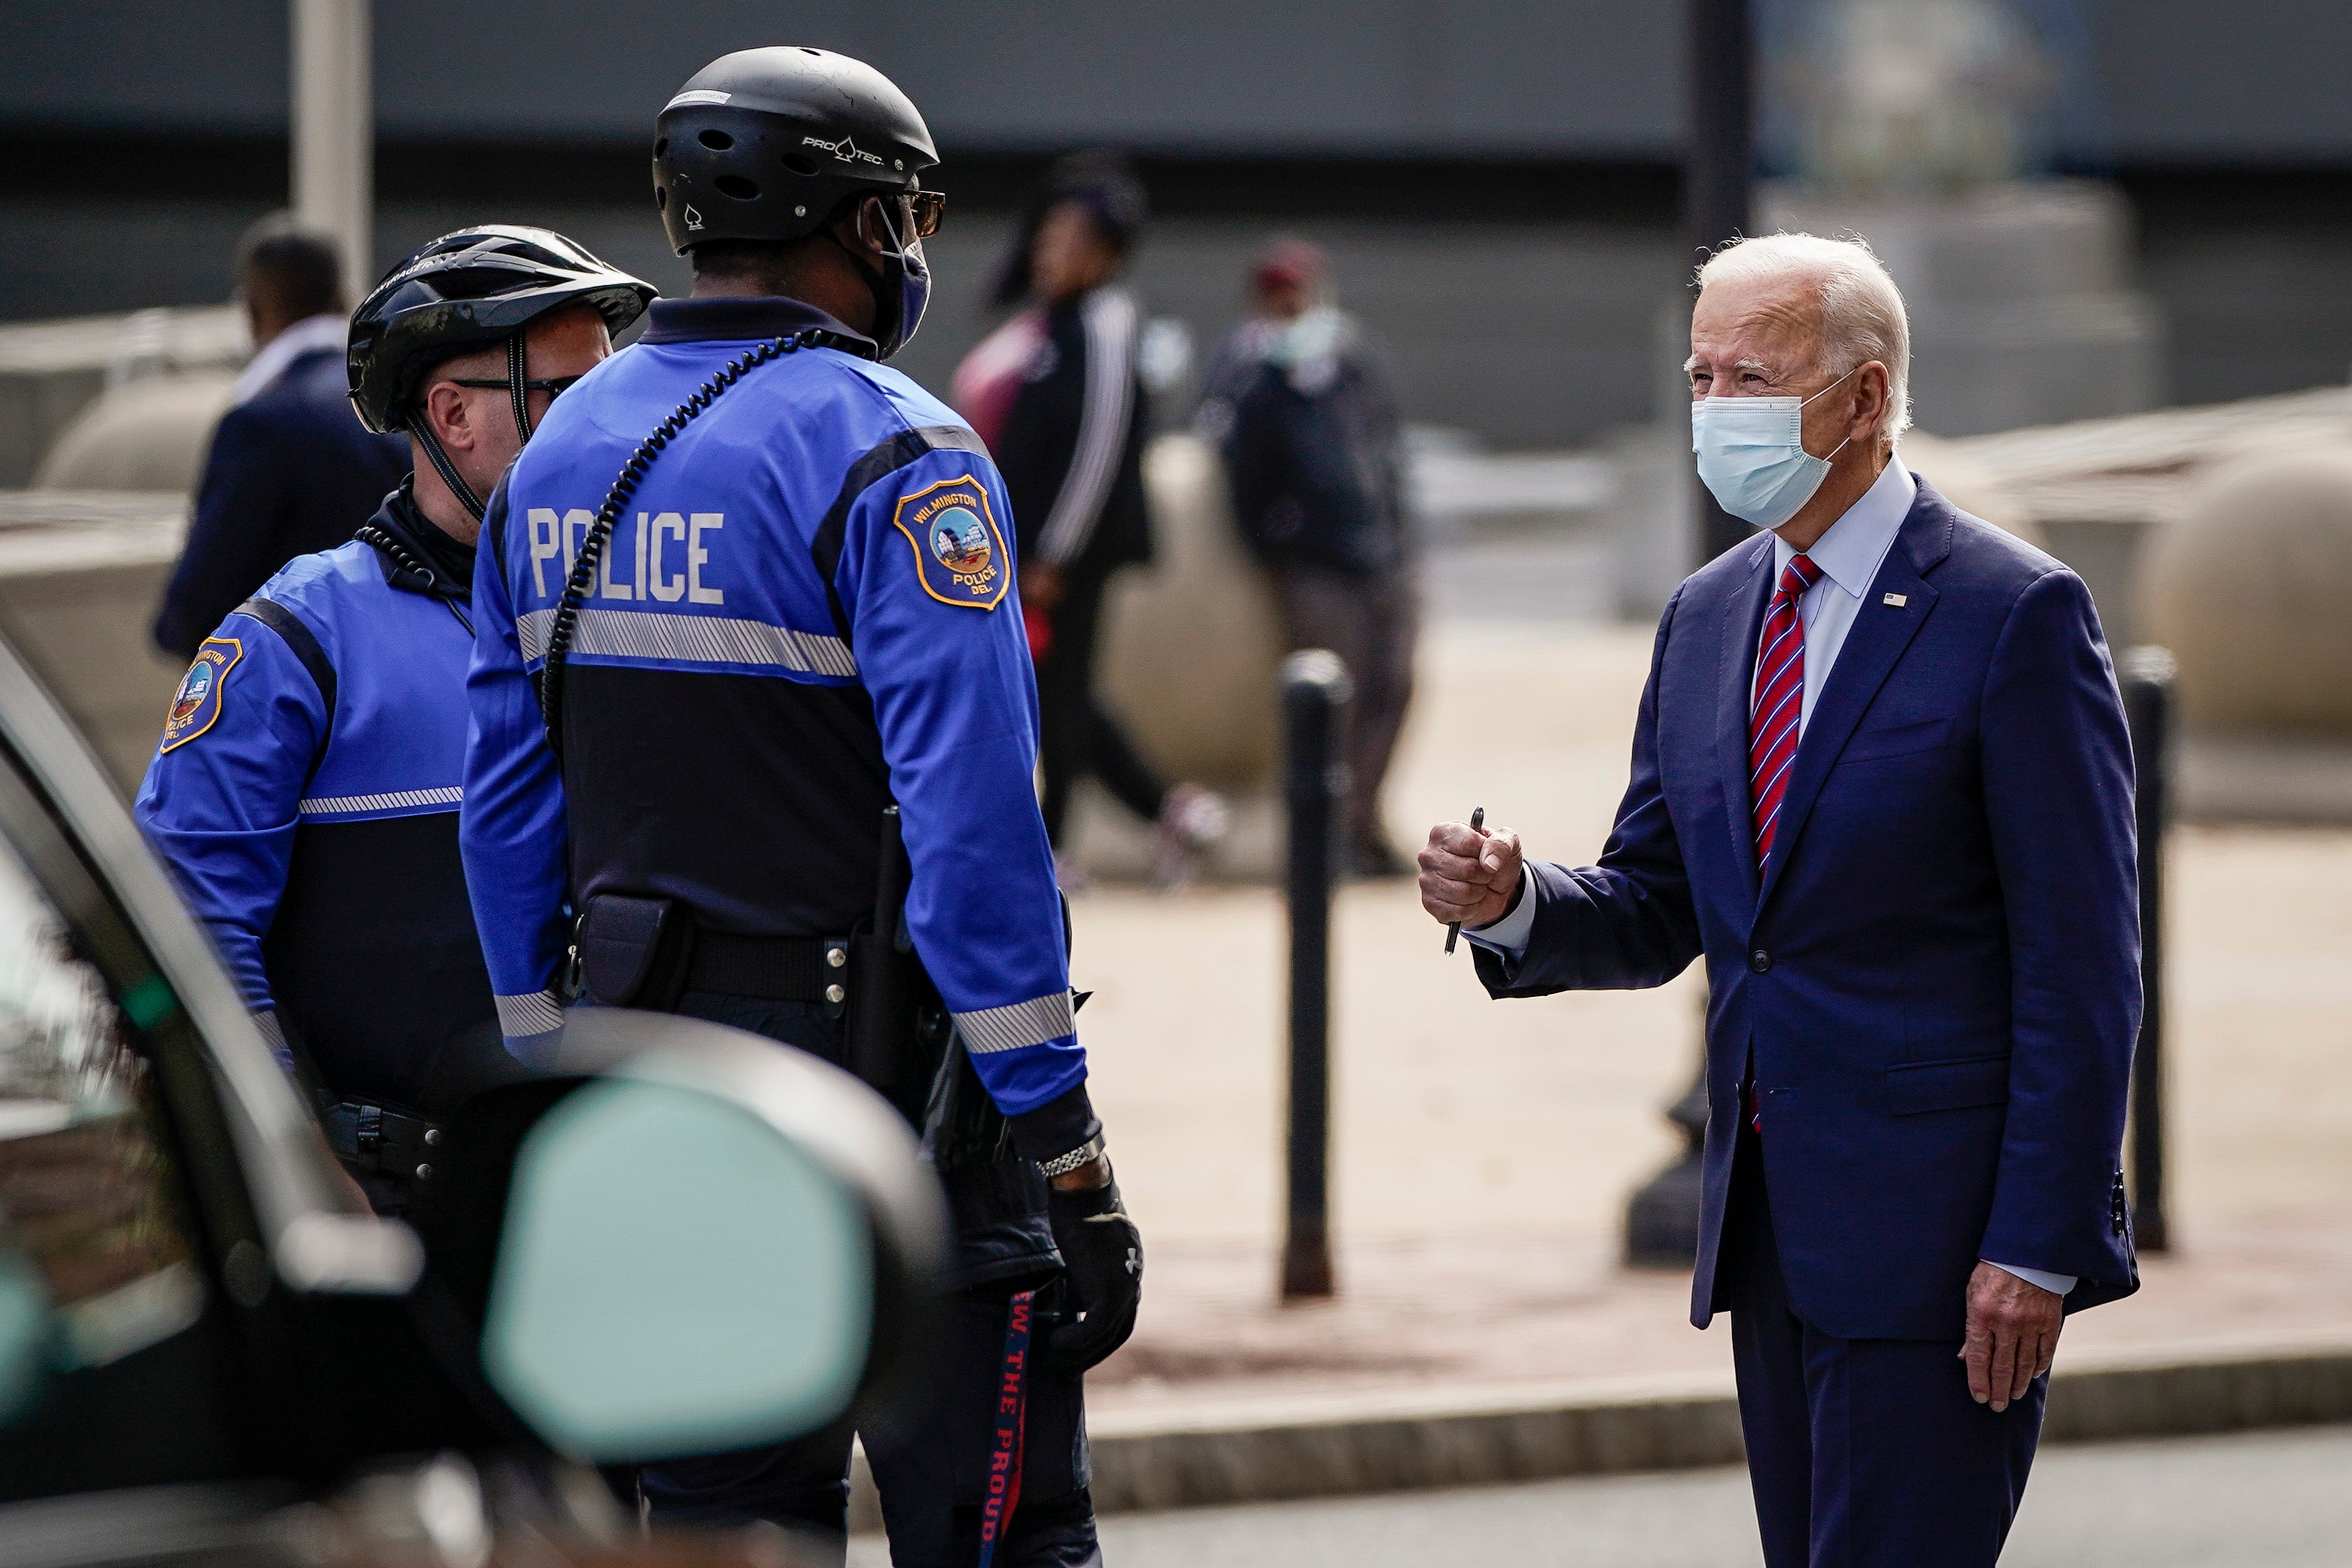 Joe Biden greets police officers as he departs The Queen theater on October 19, 2020 in Wilmington, Delaware